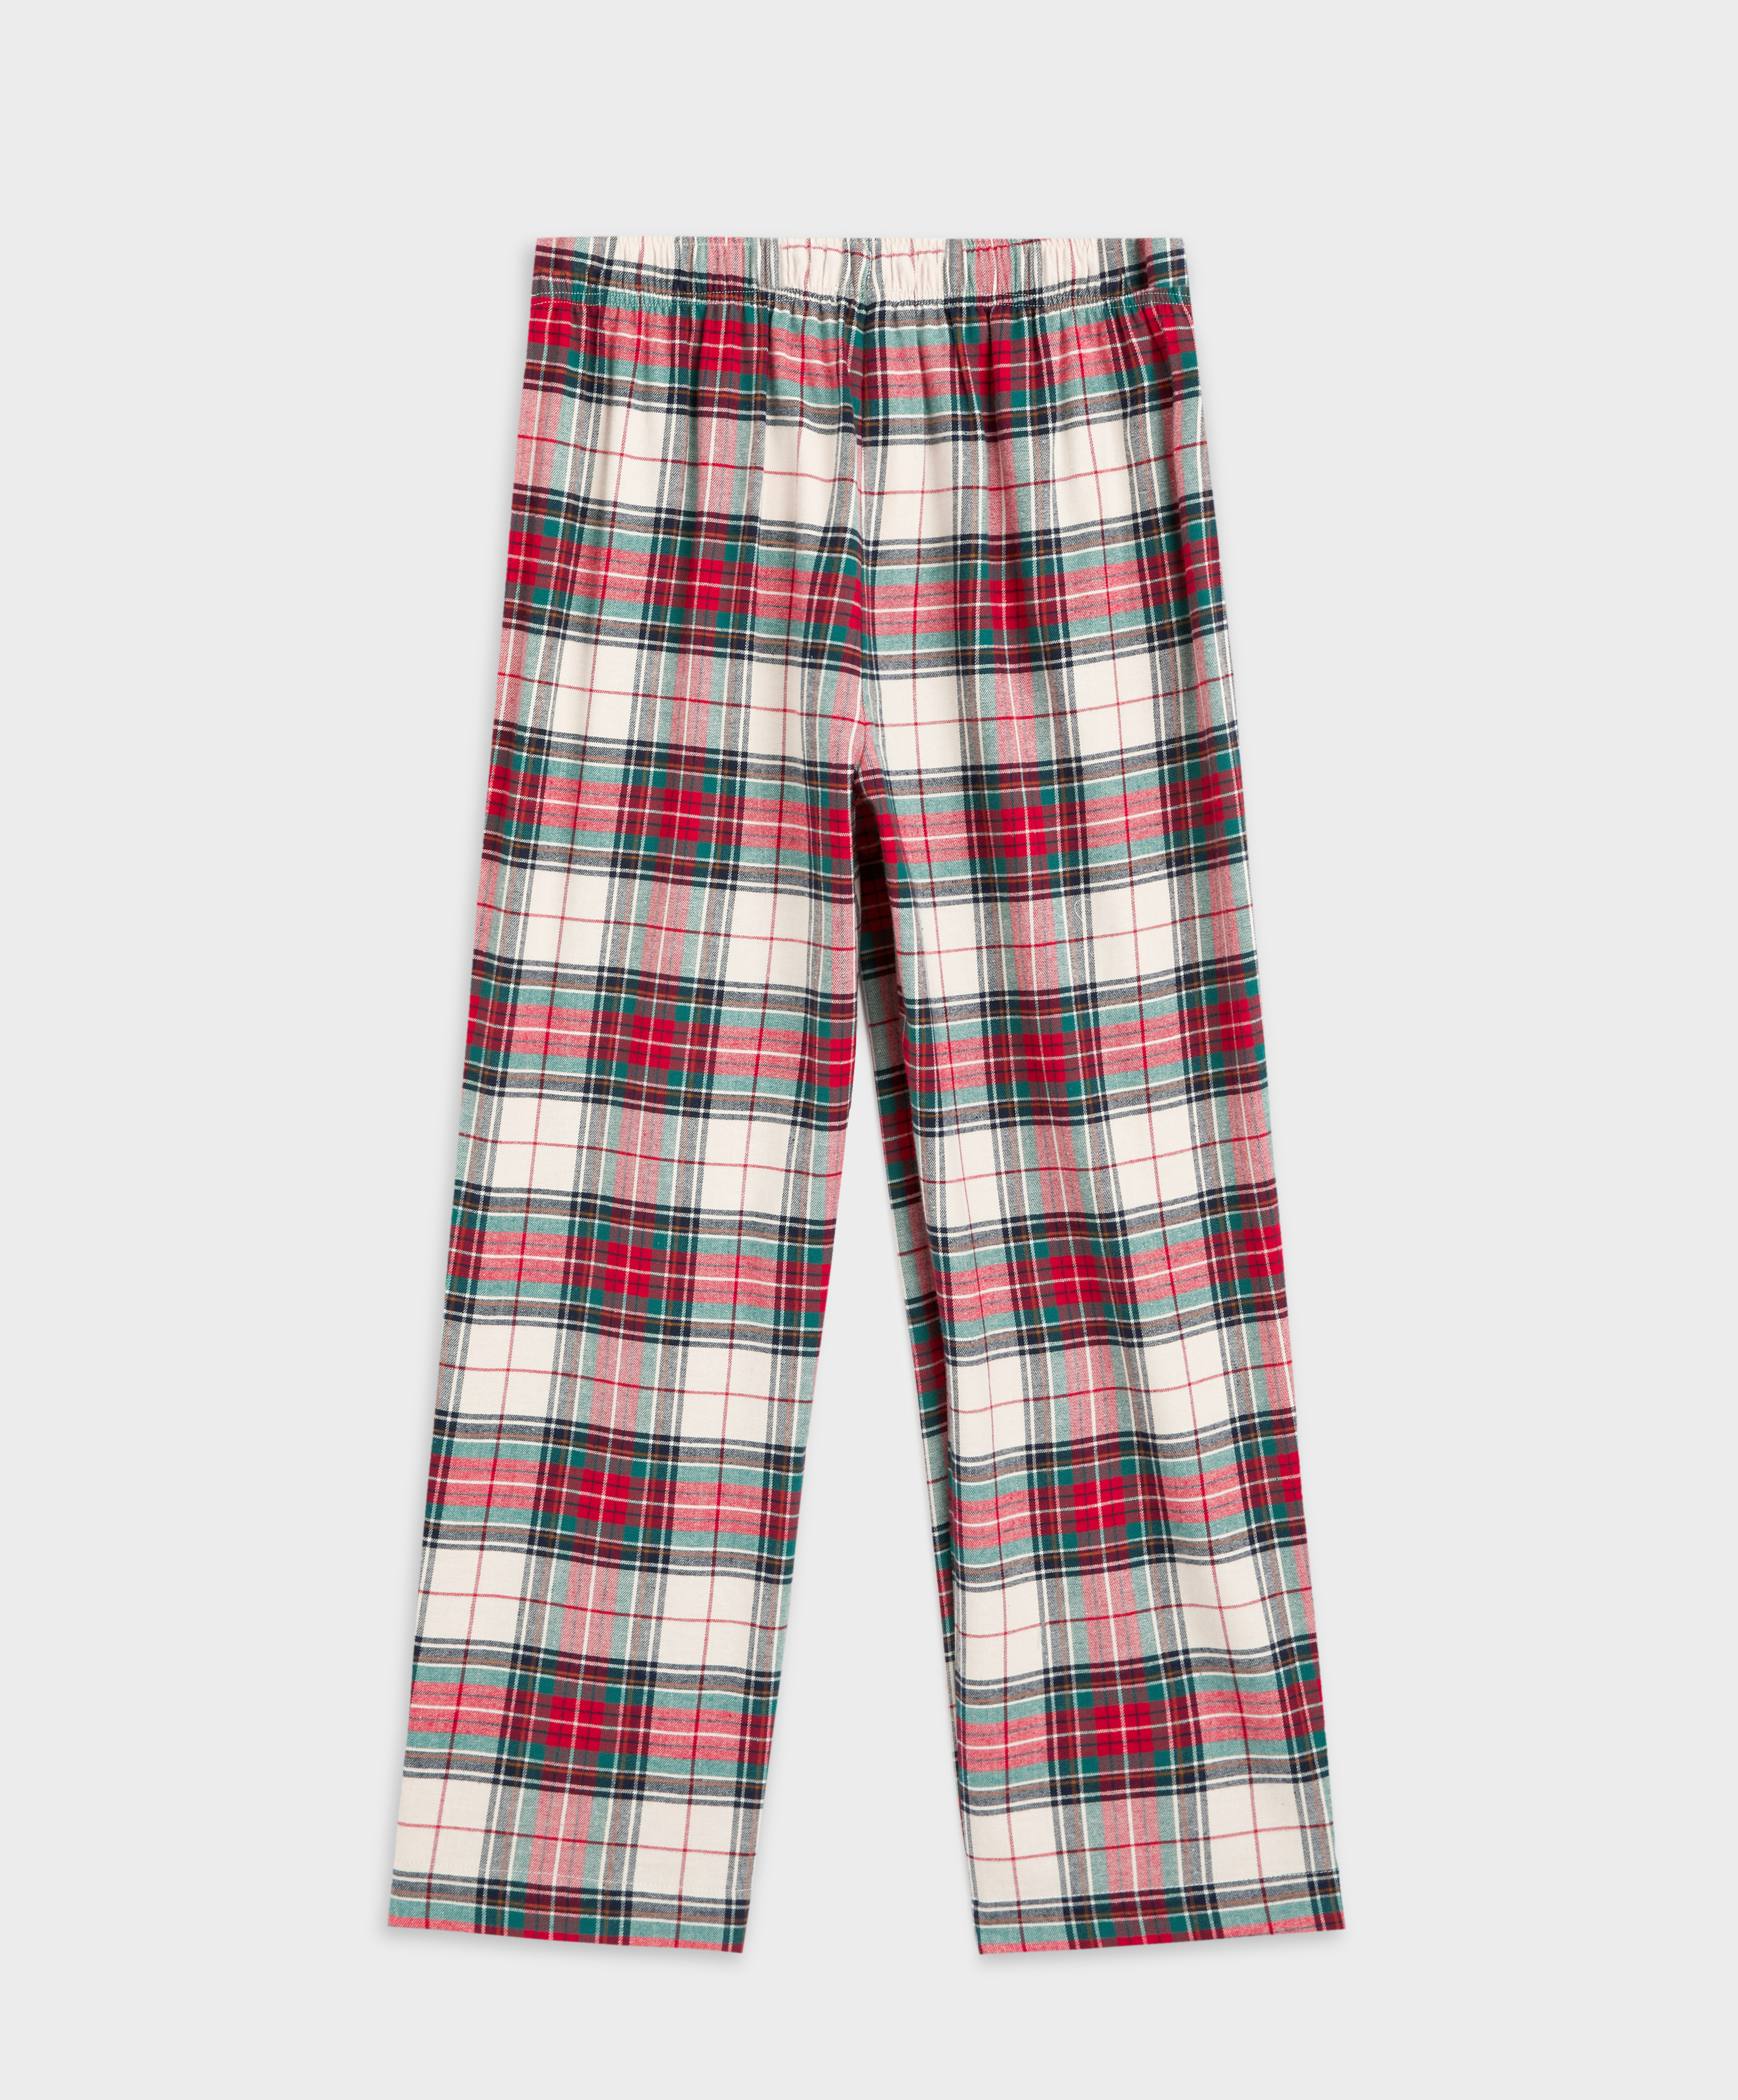 Pantalón largo cuadros algodón elástico - Pijamas - Dormir - Rebajas OYSHO España